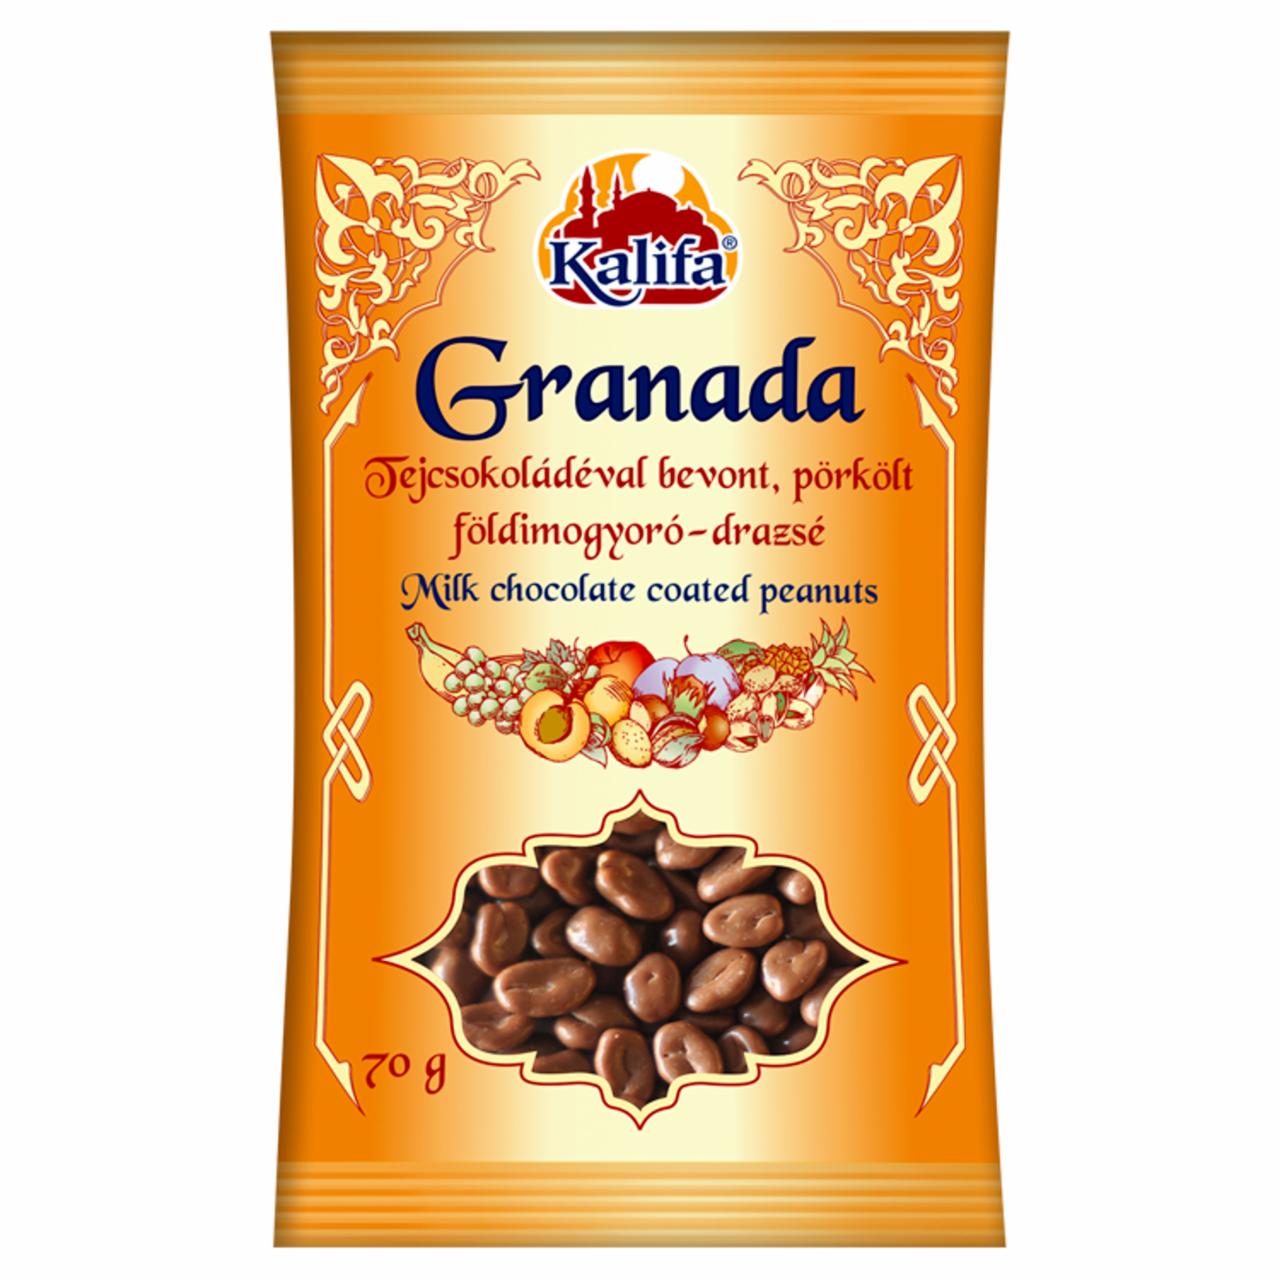 Képek - Kalifa Granada tejcsokoládéval bevont, pörkölt földimogyoró-drazsé 70 g